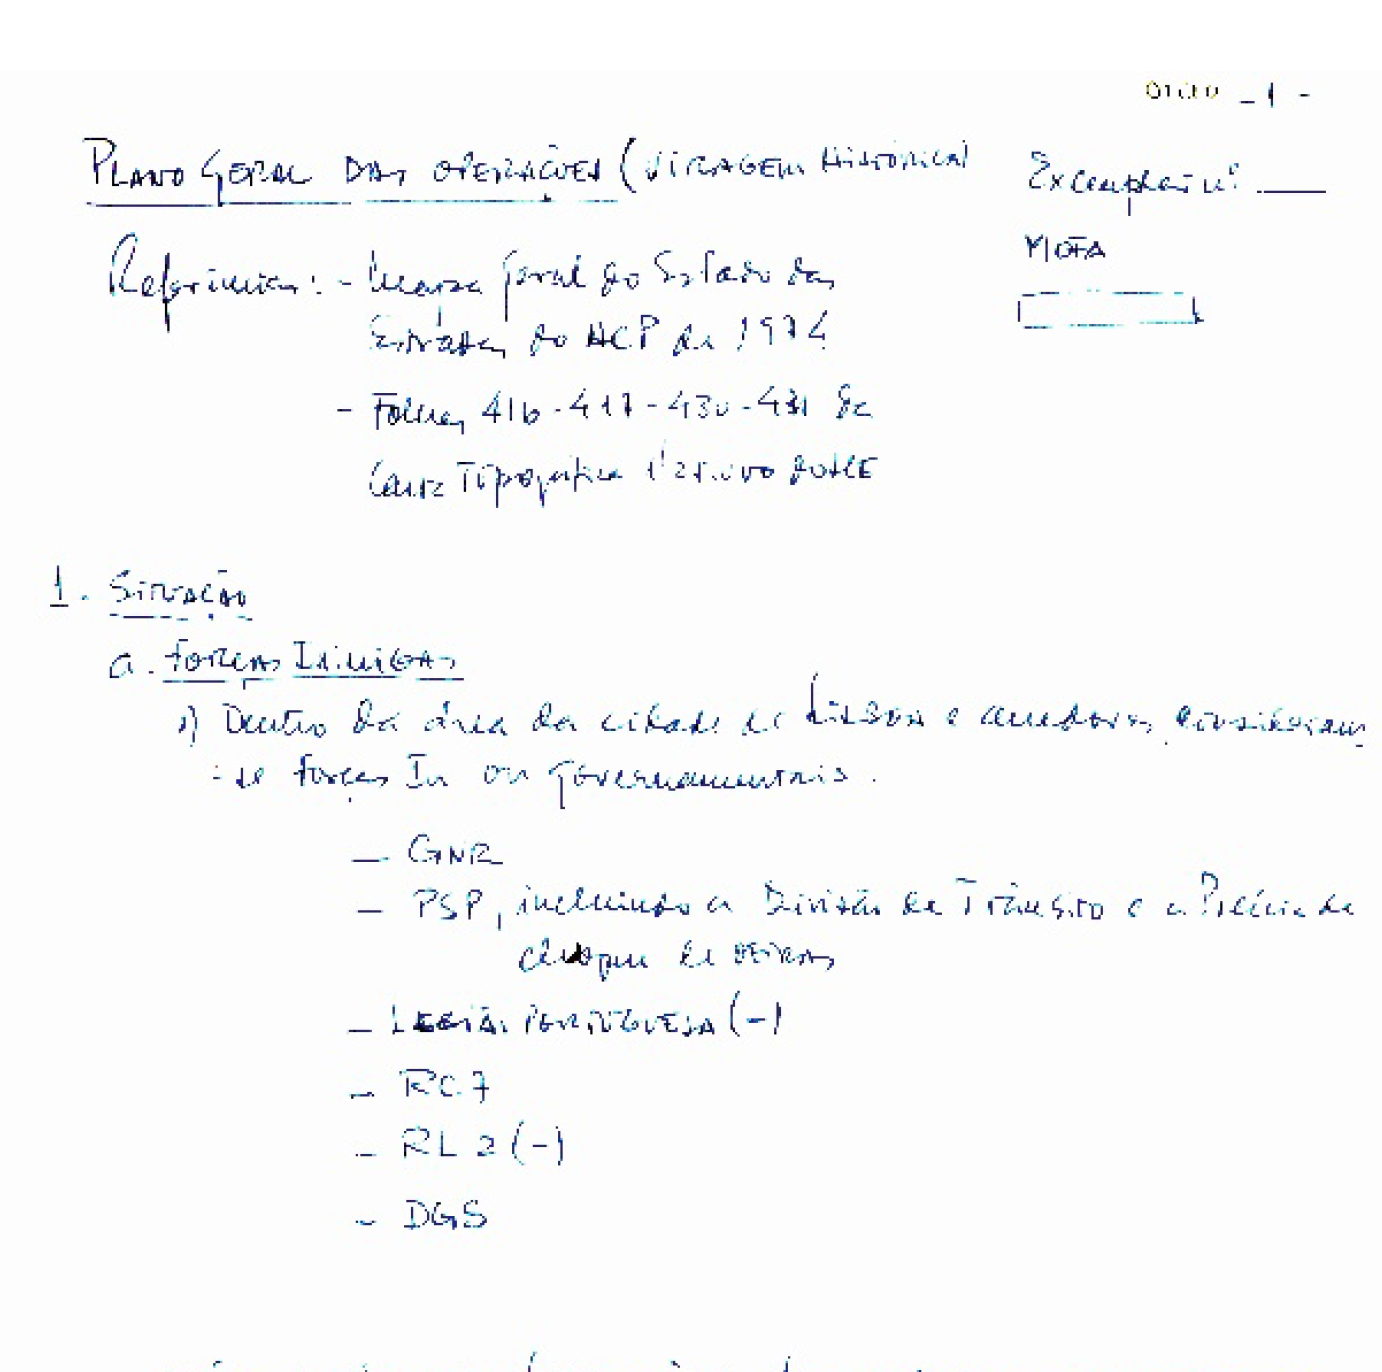 Plano Geral das operações "Viragem histórica" (25 de Abril de 1974)